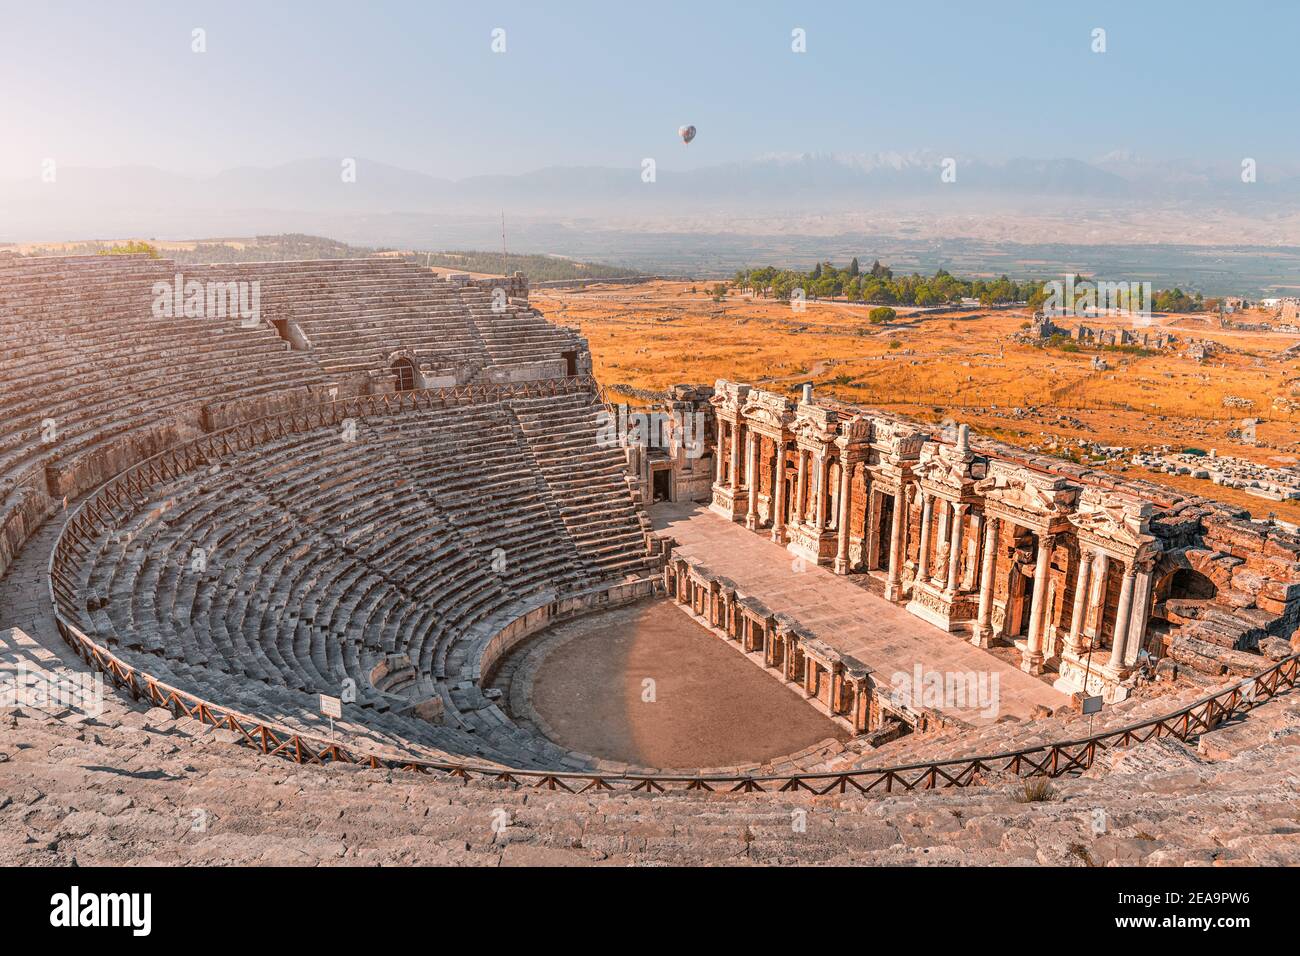 Ancien amphithéâtre grec dans la ville de Hiérapolis près de Pamukkale en Turquie. Merveilles et attractions de voyage. Montgolfière au-dessus le matin sk Banque D'Images